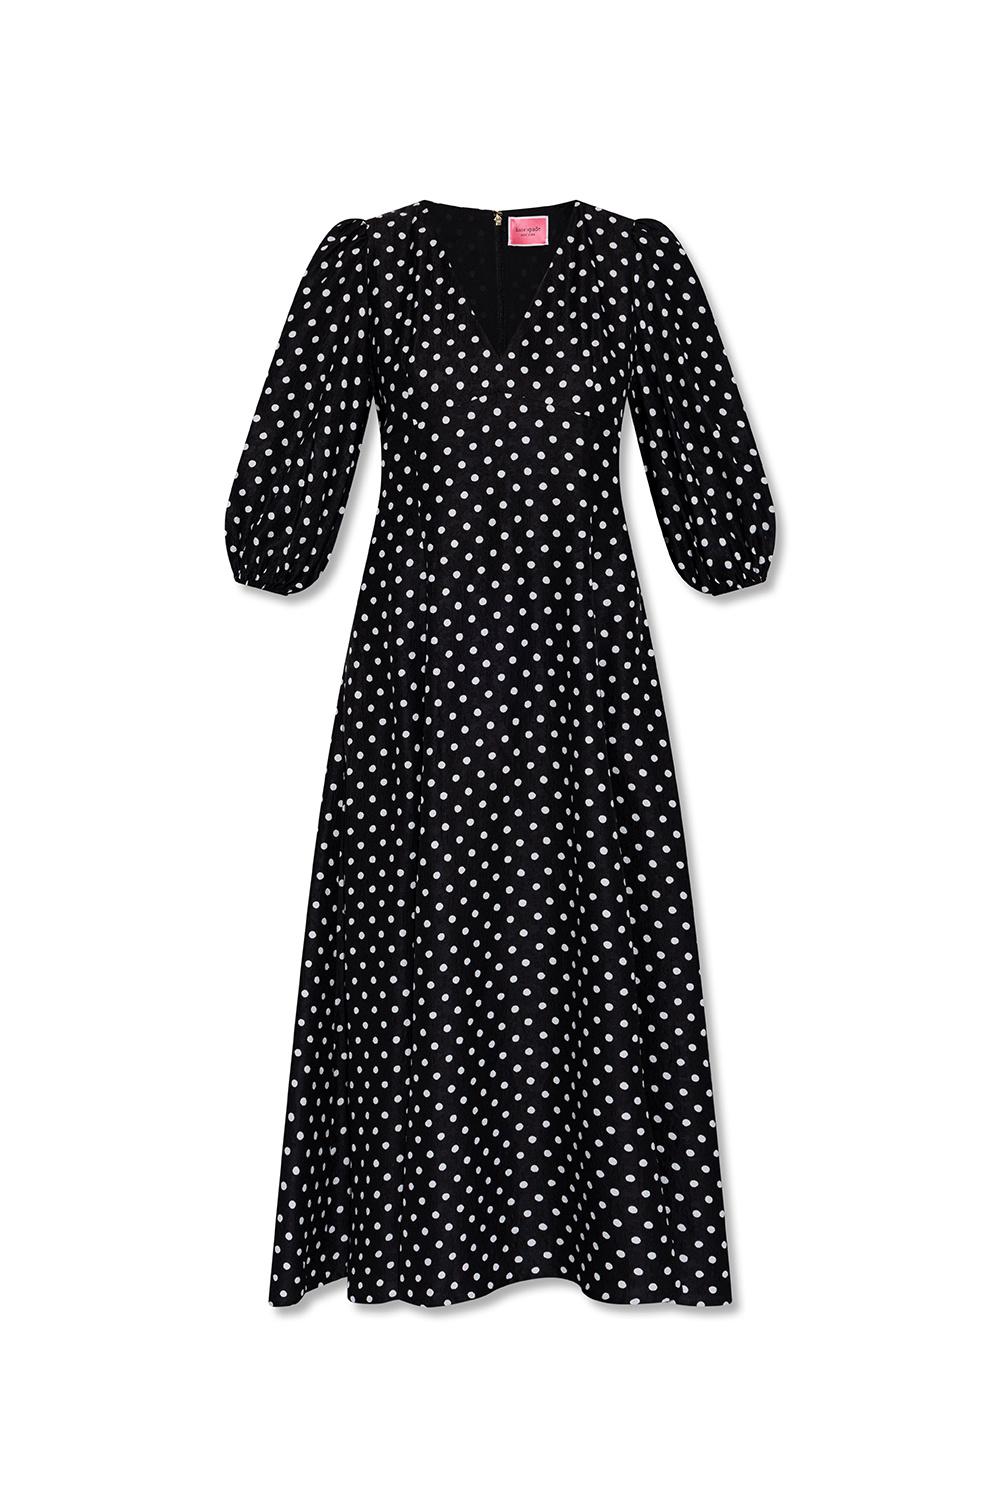 Kate Spade Polka Dot Dress in Black | Lyst UK